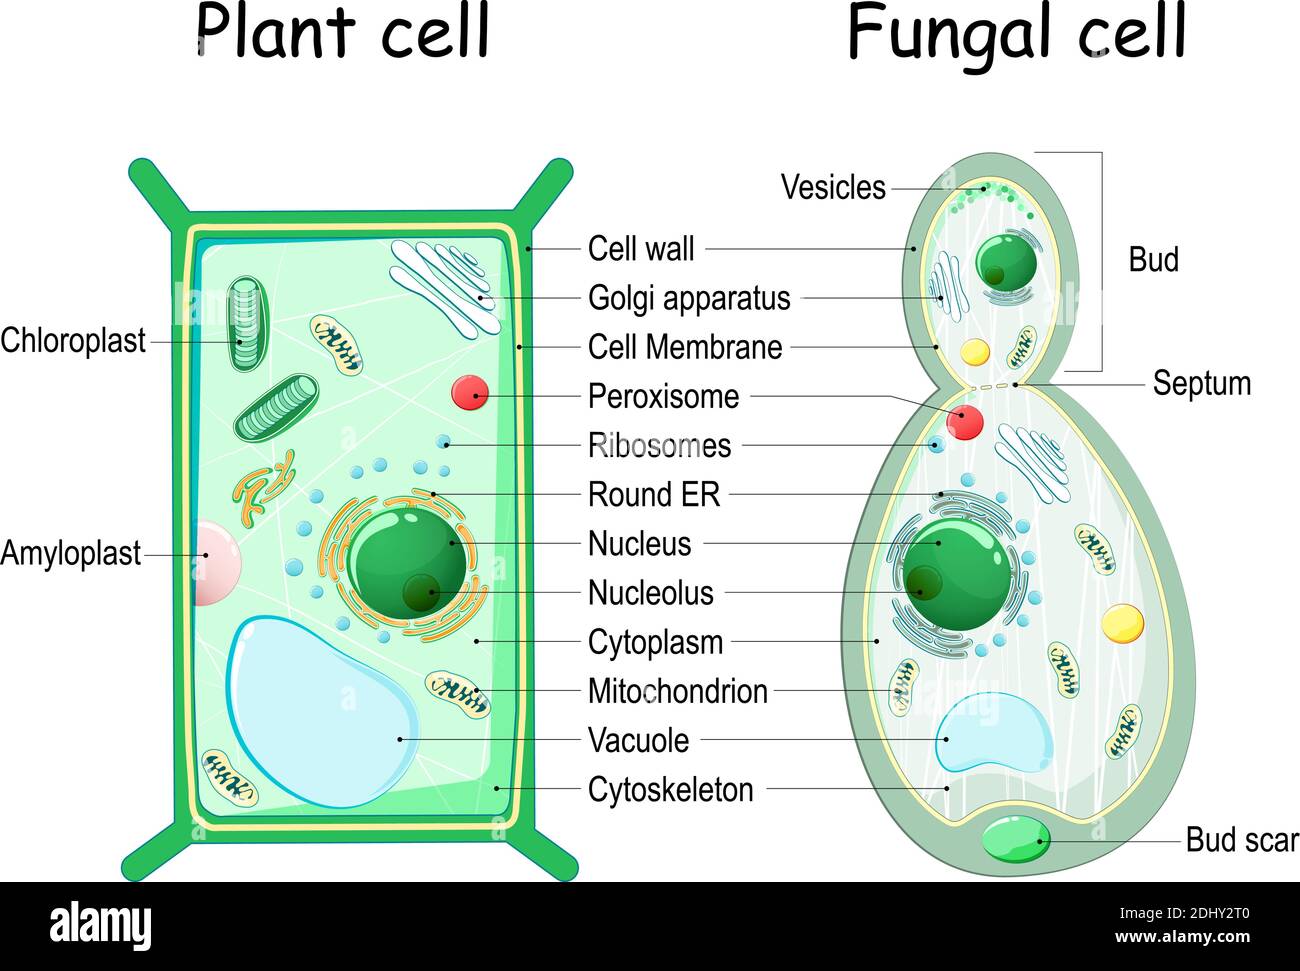 Pflanzenzelle und Pilz (Hefe) Zellstruktur. Querschnitt und Anatomie der Zelle. Biologiediagramm. Vektorgrafik auf weißem Hintergrund Stock Vektor